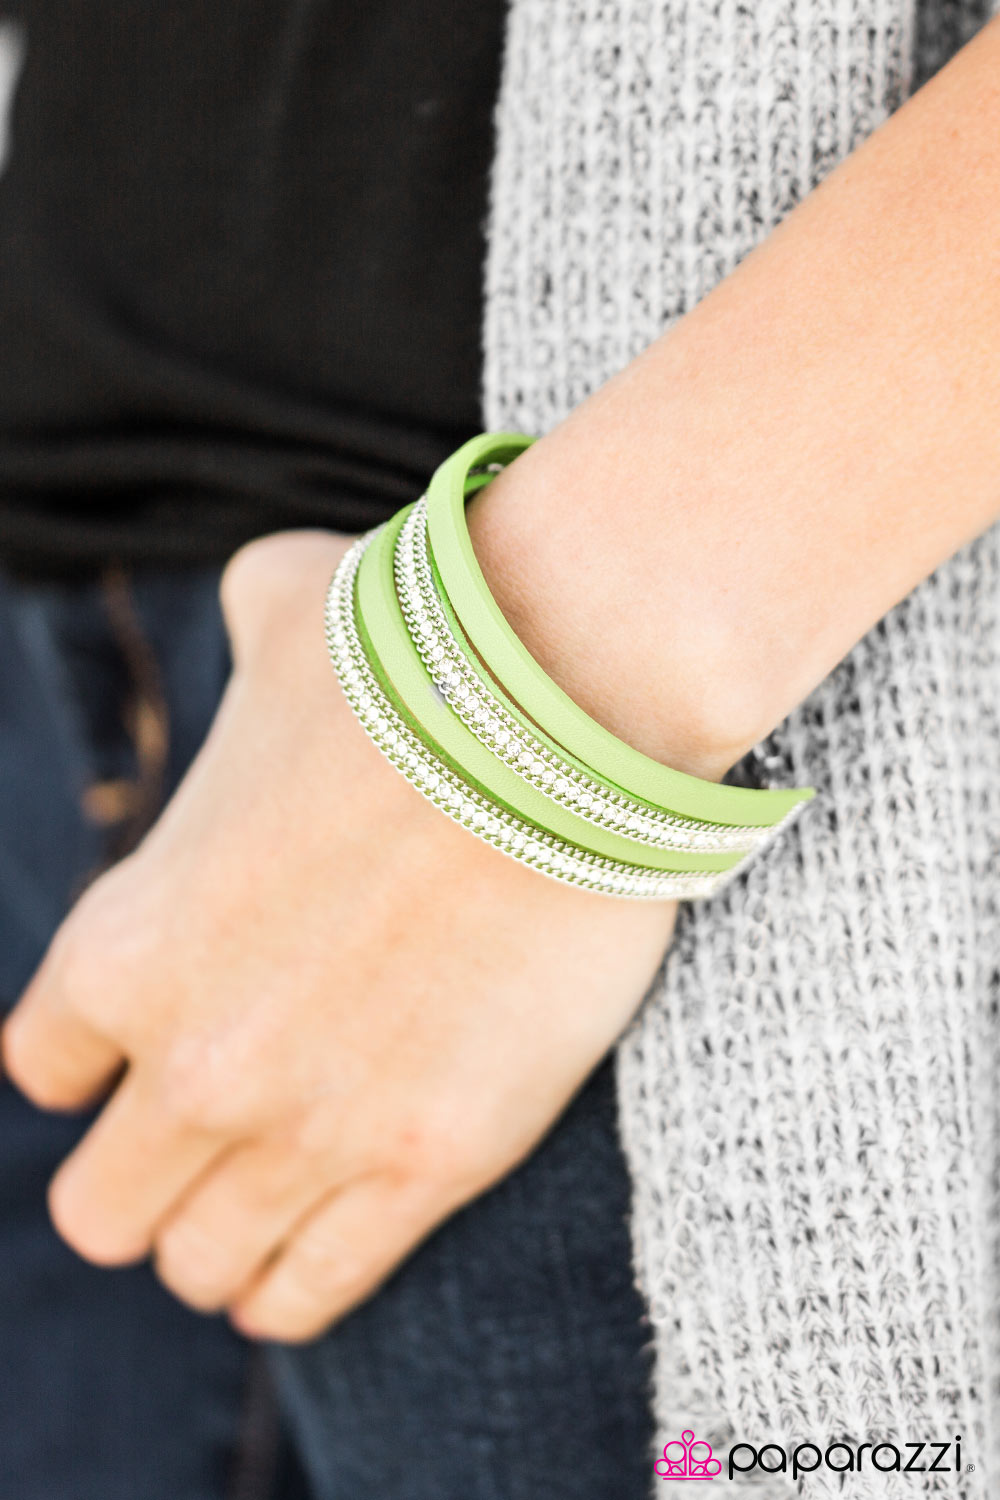 Flash Mob Fashion - Green Paparazzi bracelet